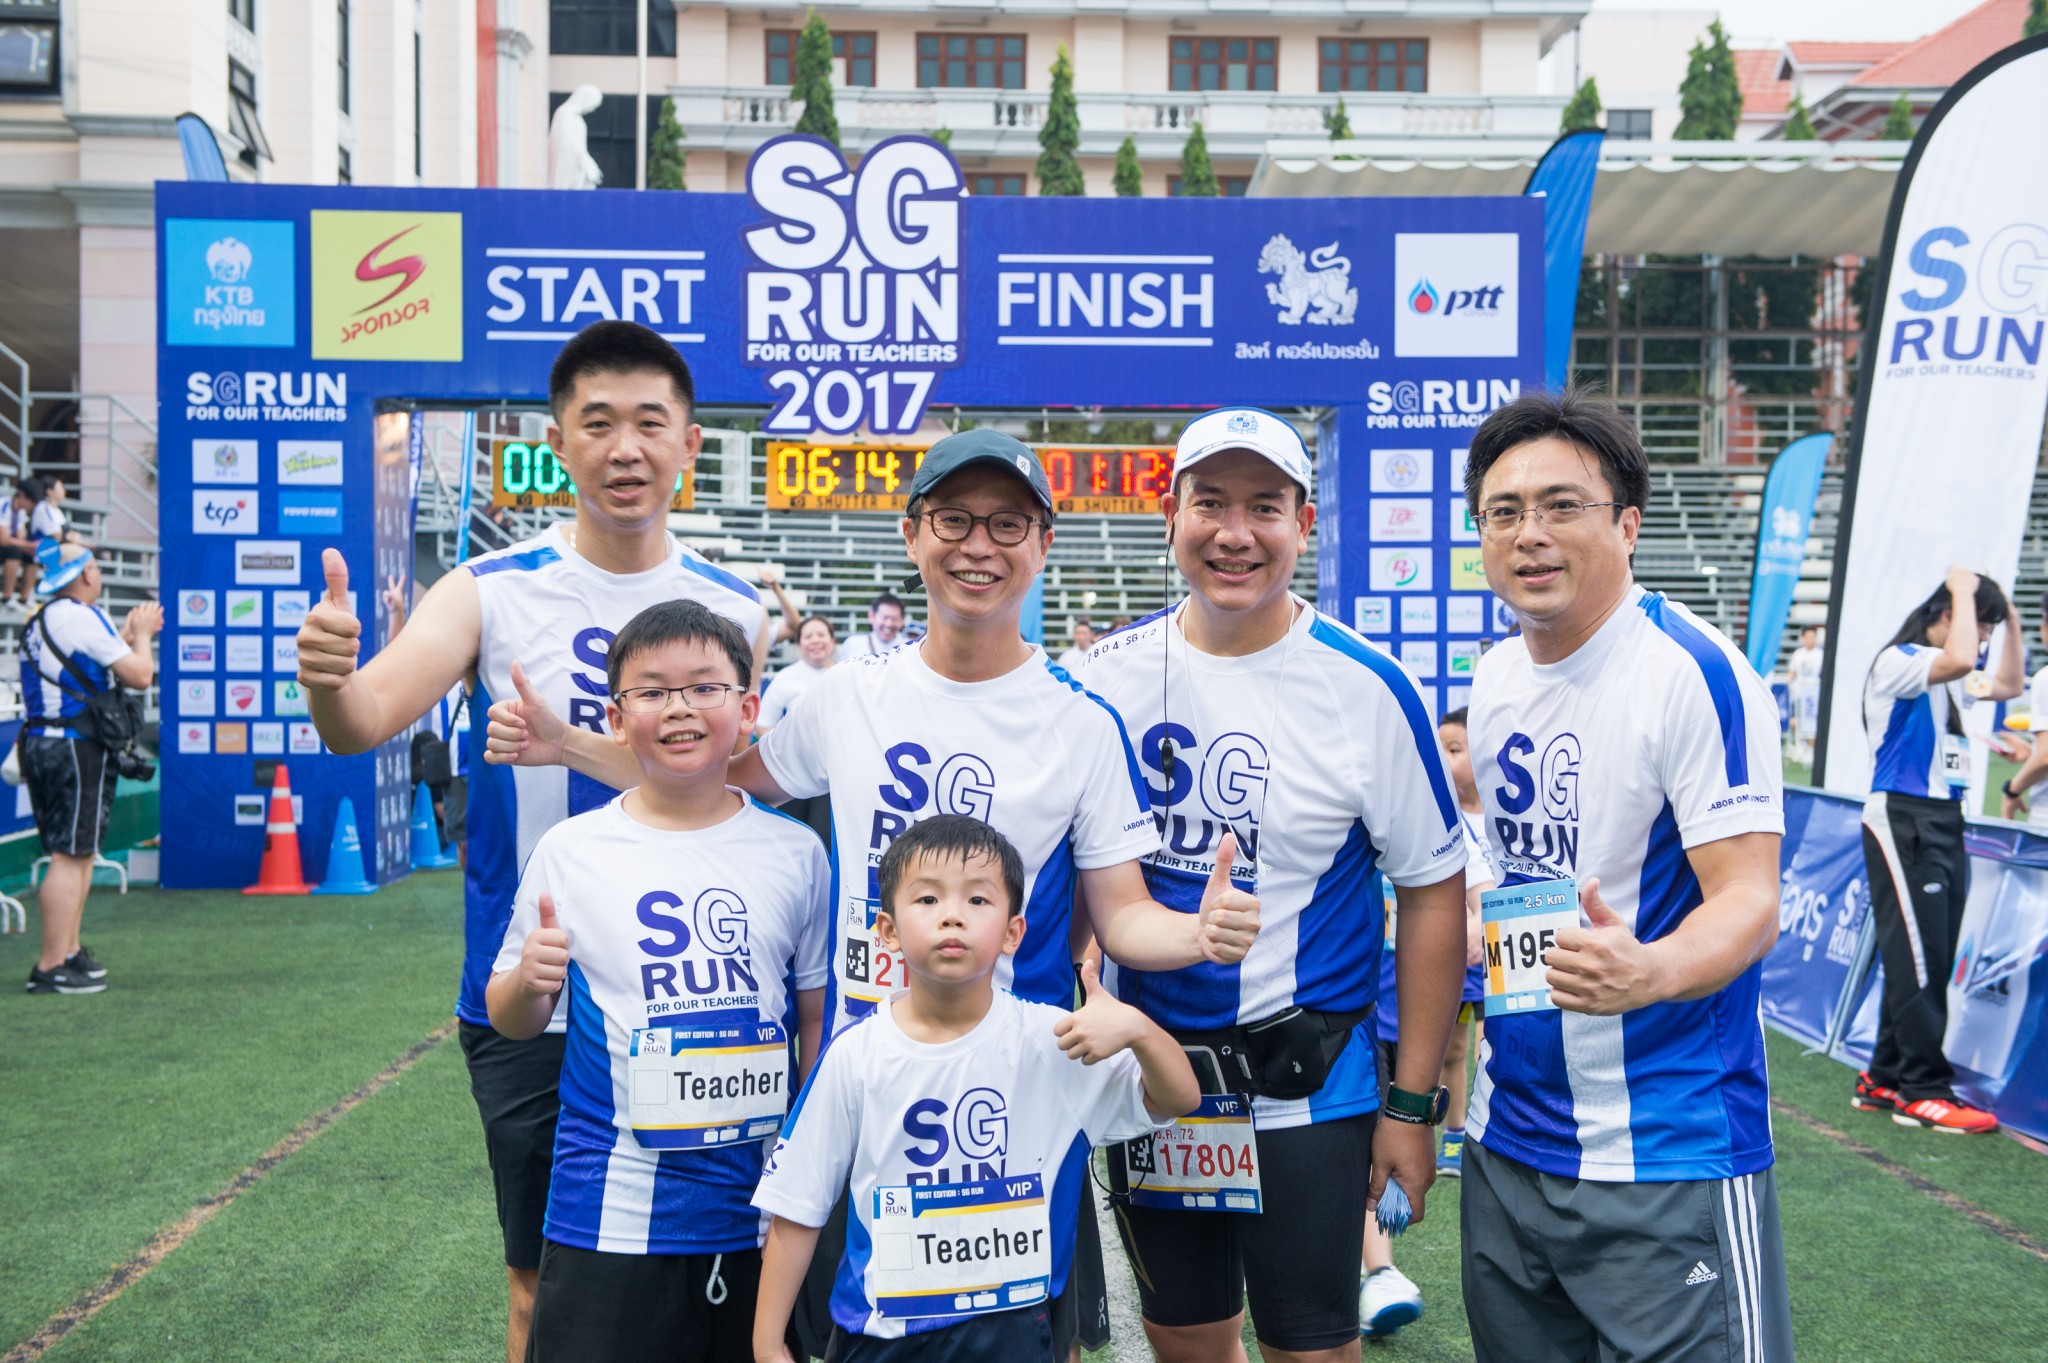 โตโย ไทร์ส์ ร่วมสนับสนุนวิ่งการกุศล SG Run ก้าวนี้เพื่อครูของพวกเรา